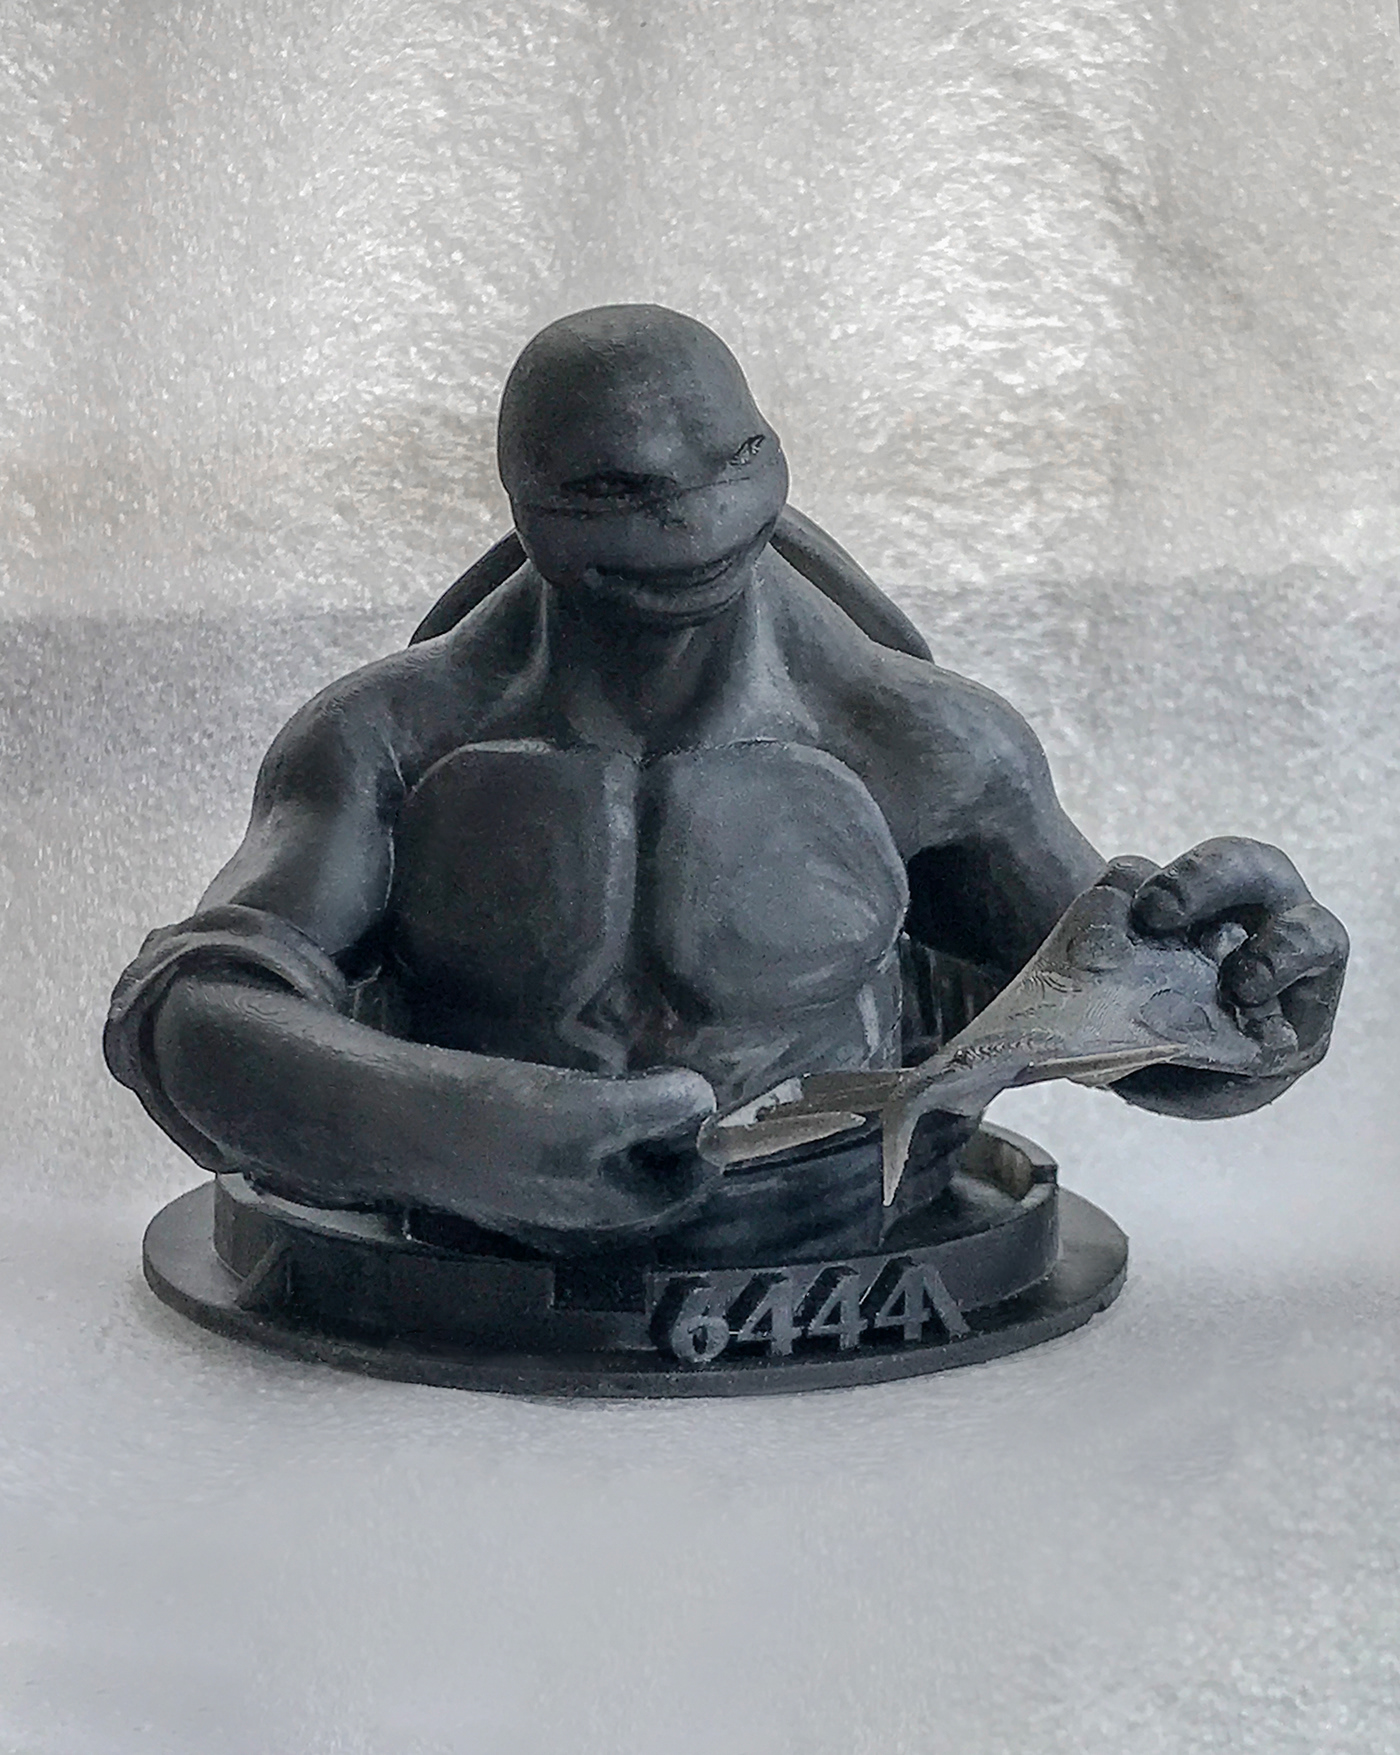 Leonardo nft ninja ninjaturtles statue Turtle